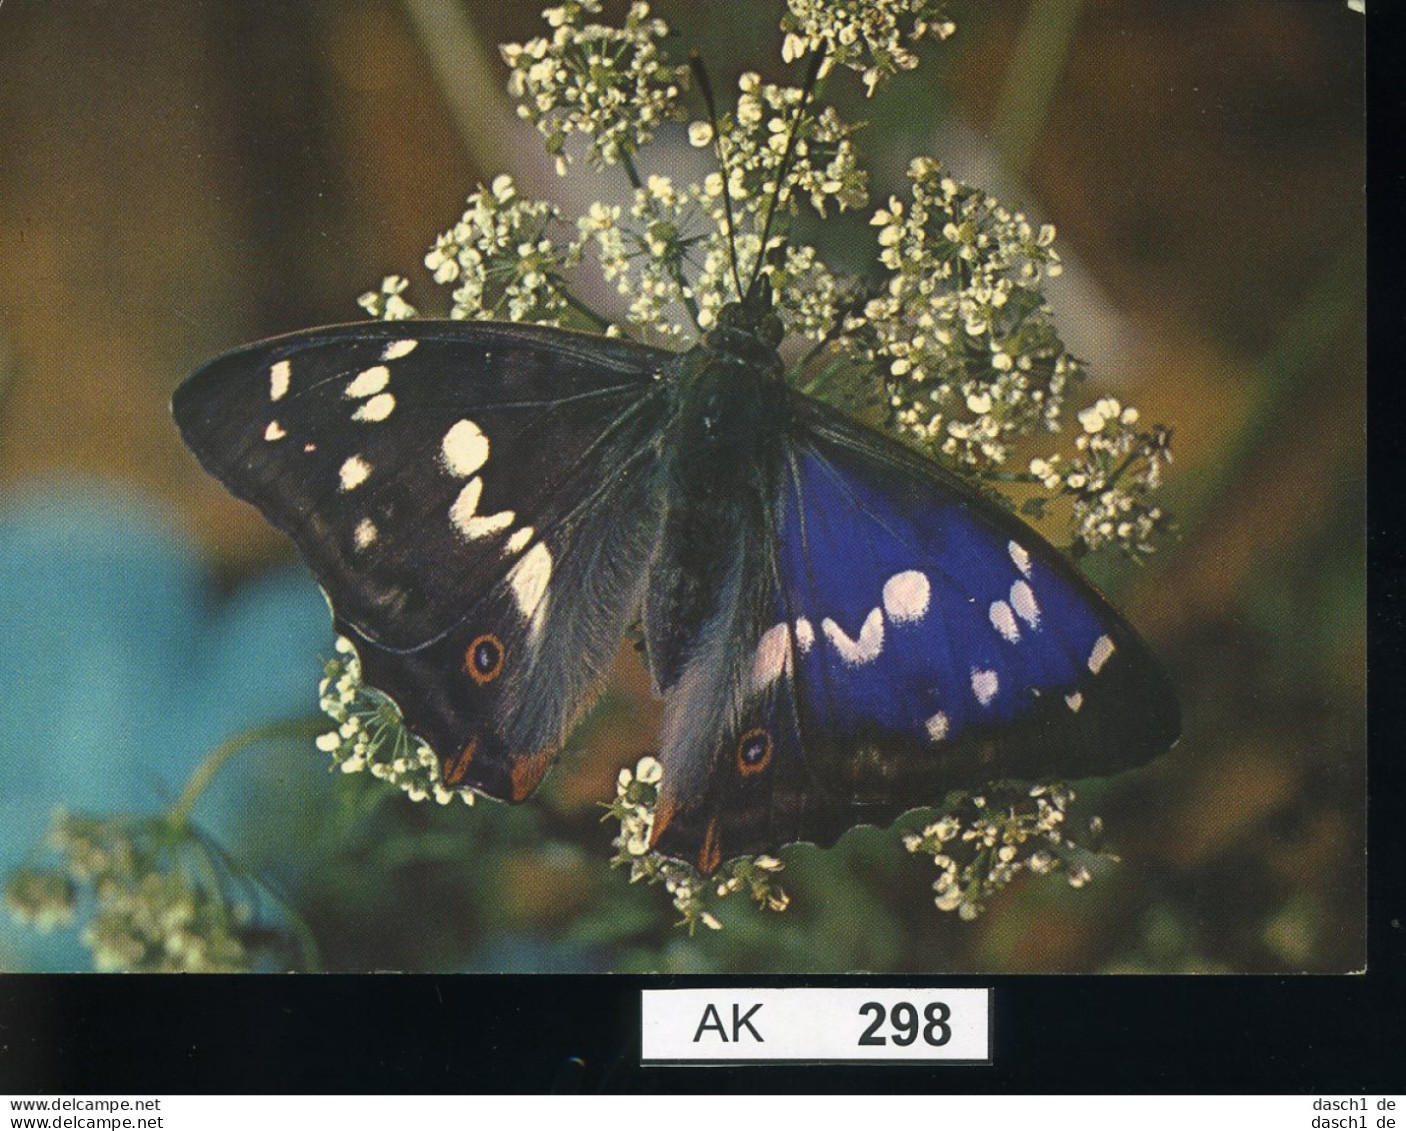 AK298, AK Nicht Gelaufen, Ecke Angestoßen, Schmetterling, Blauschiller - Vlinders